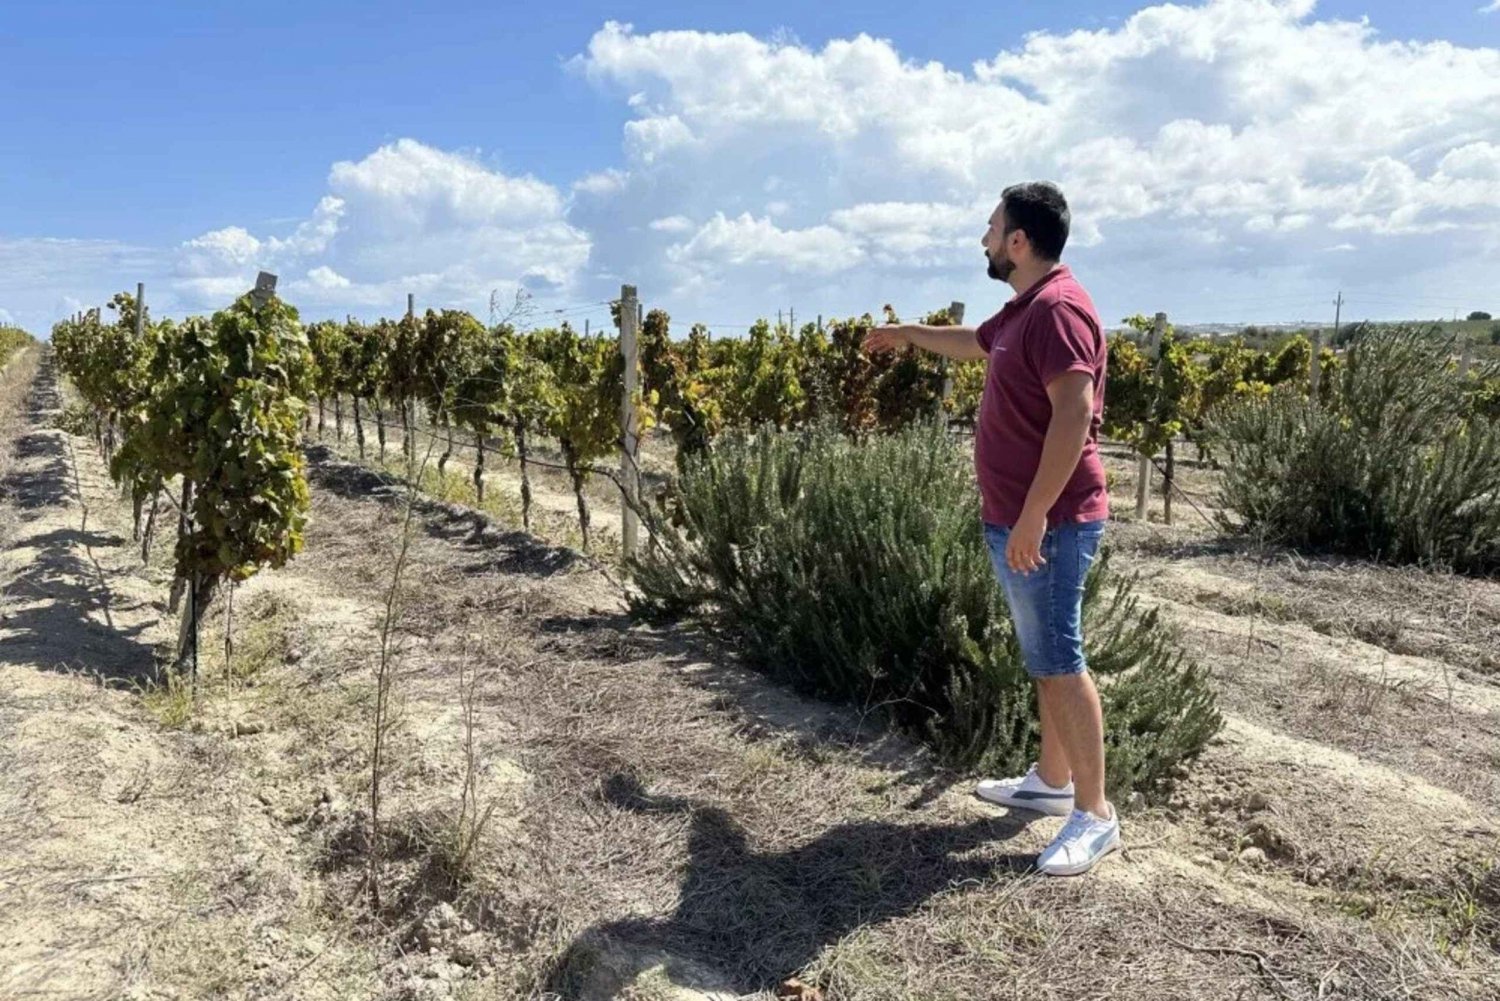 Noto: Vinsmaking og omvisning på vingård med lokale produkter